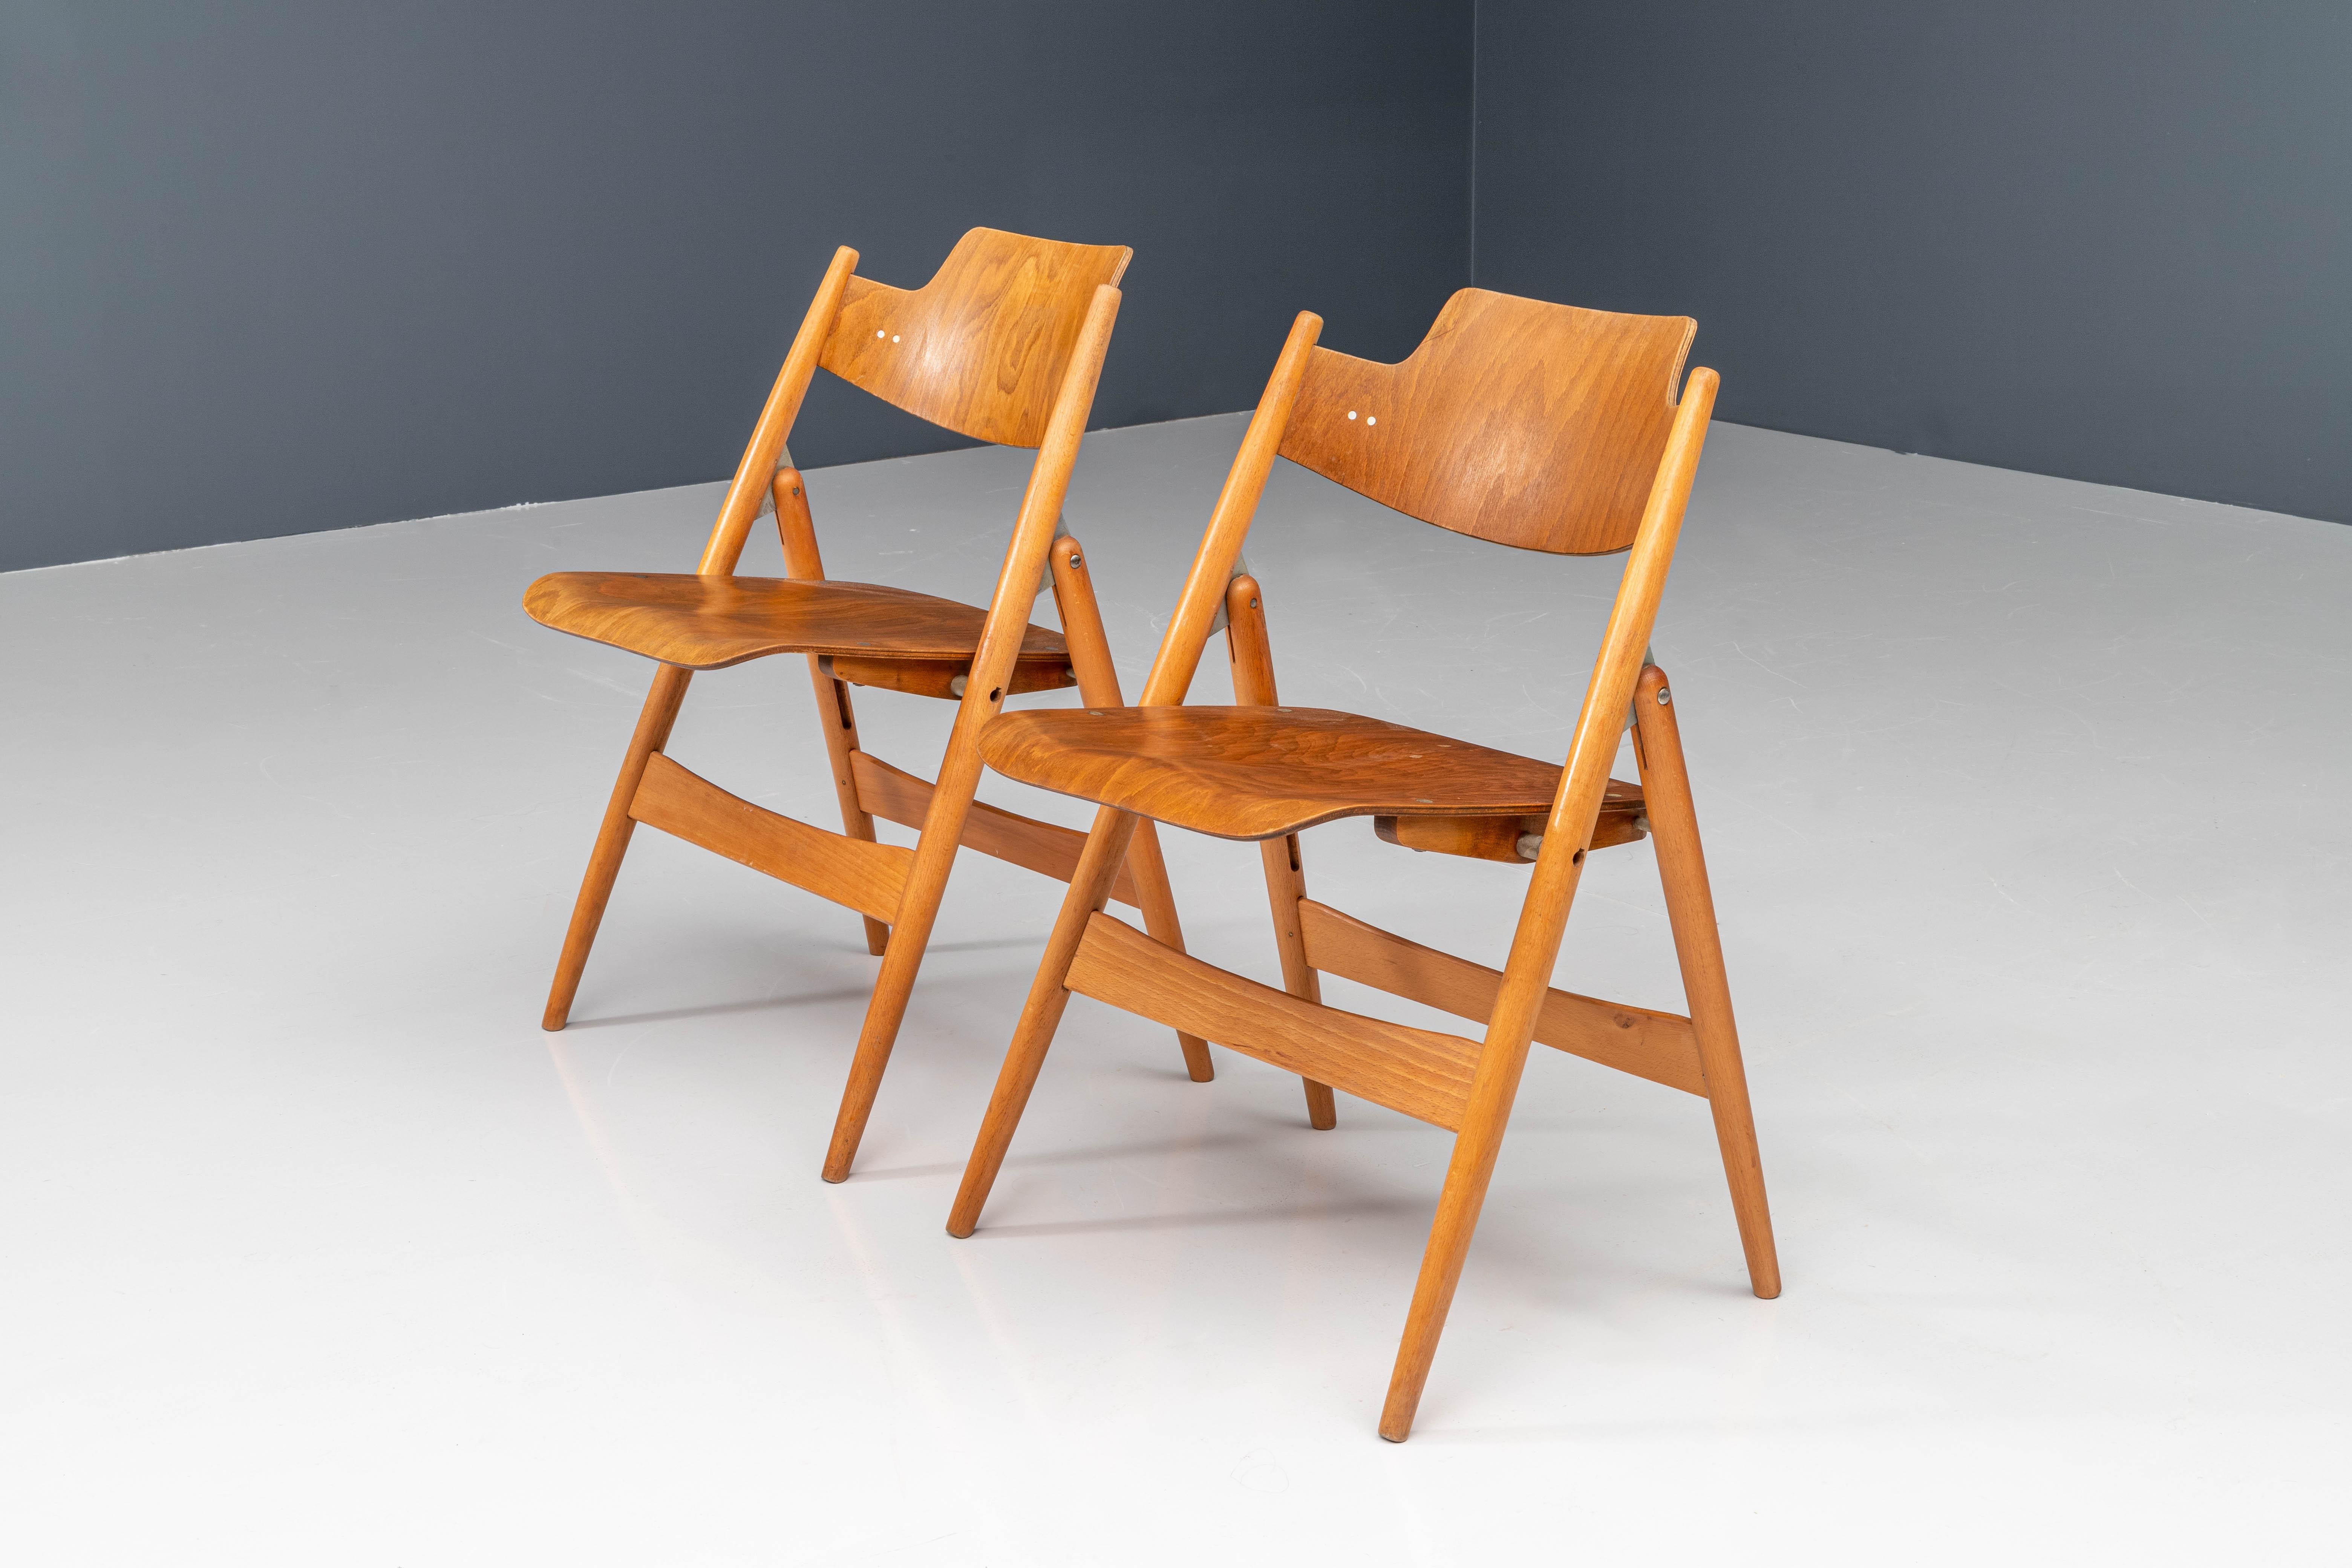 Ces chaises pliantes, modèle SE18, ont été conçues en 1952 par l'architecte allemand Egon Eiermann pour Wilde & Spieth. Sa structure est en bois de hêtre tandis que l'assise et le dossier sont en contreplaqué moulé plaqué hêtre. La chaise est